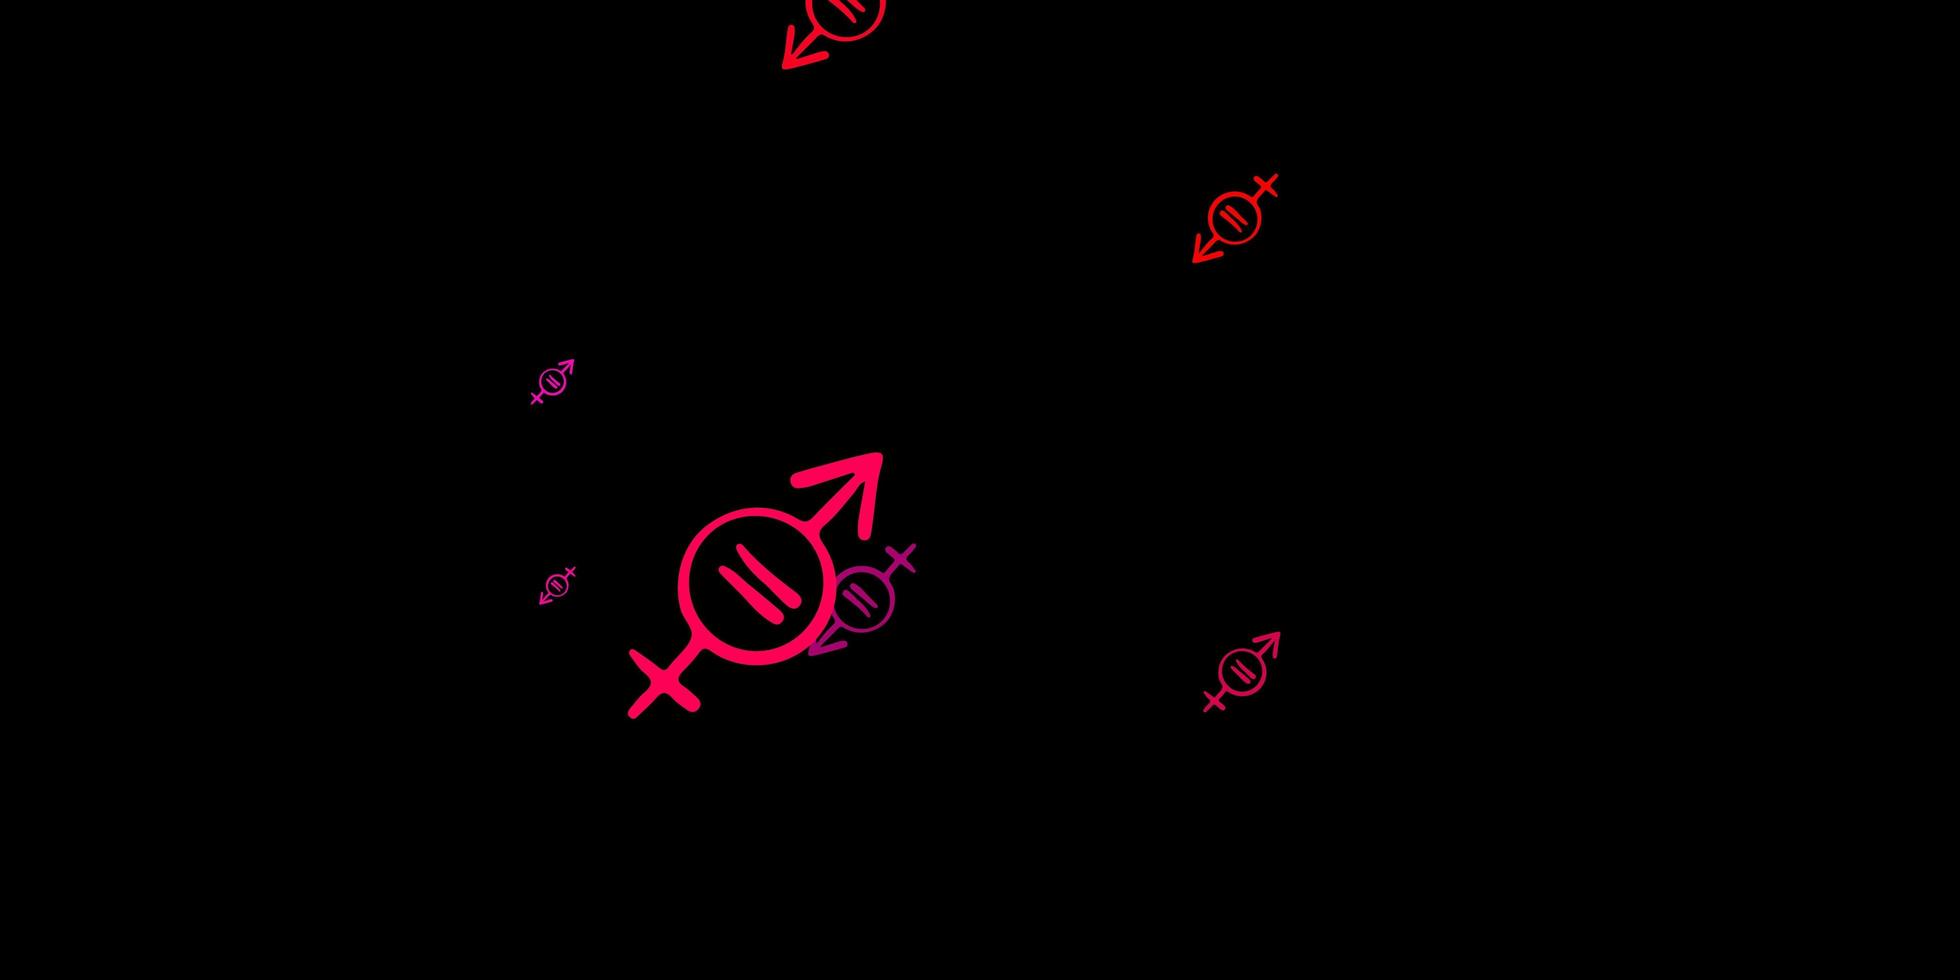 padrão de vetor roxo e rosa escuro com elementos do feminismo.